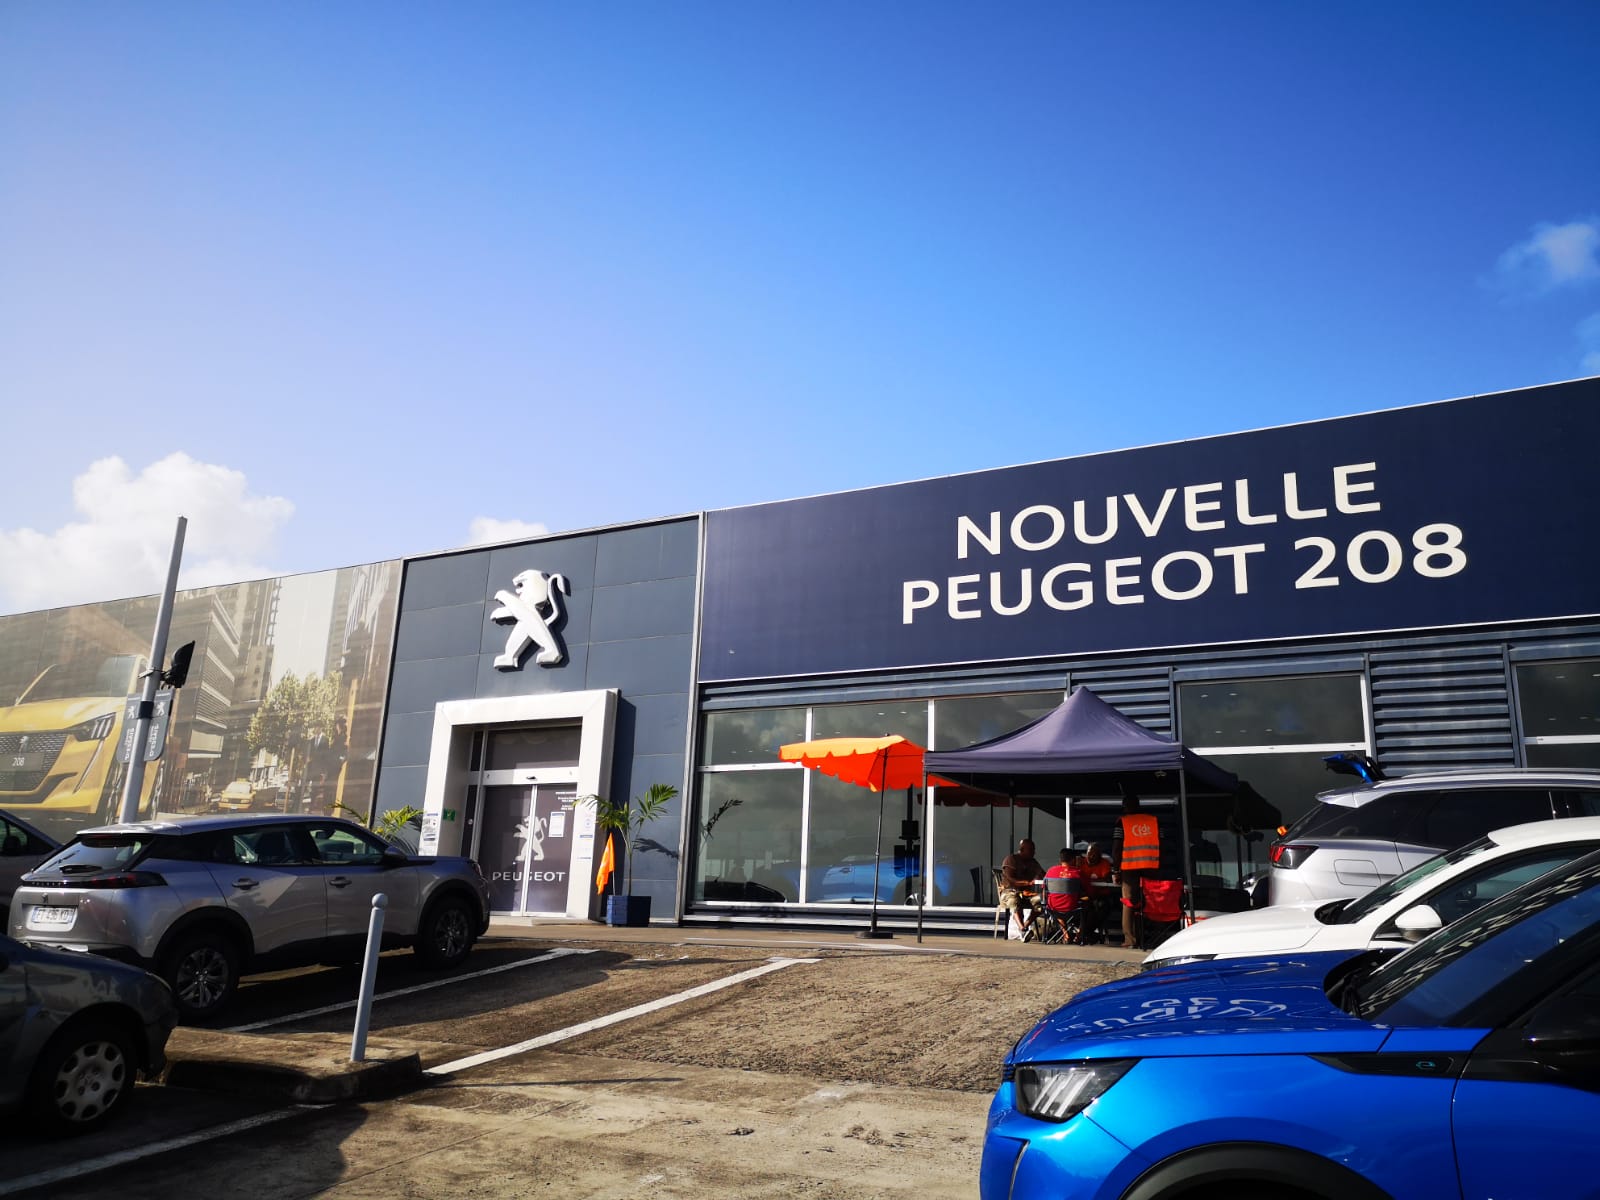     Le conflit est terminé à Peugeot - Blue Automobiles

